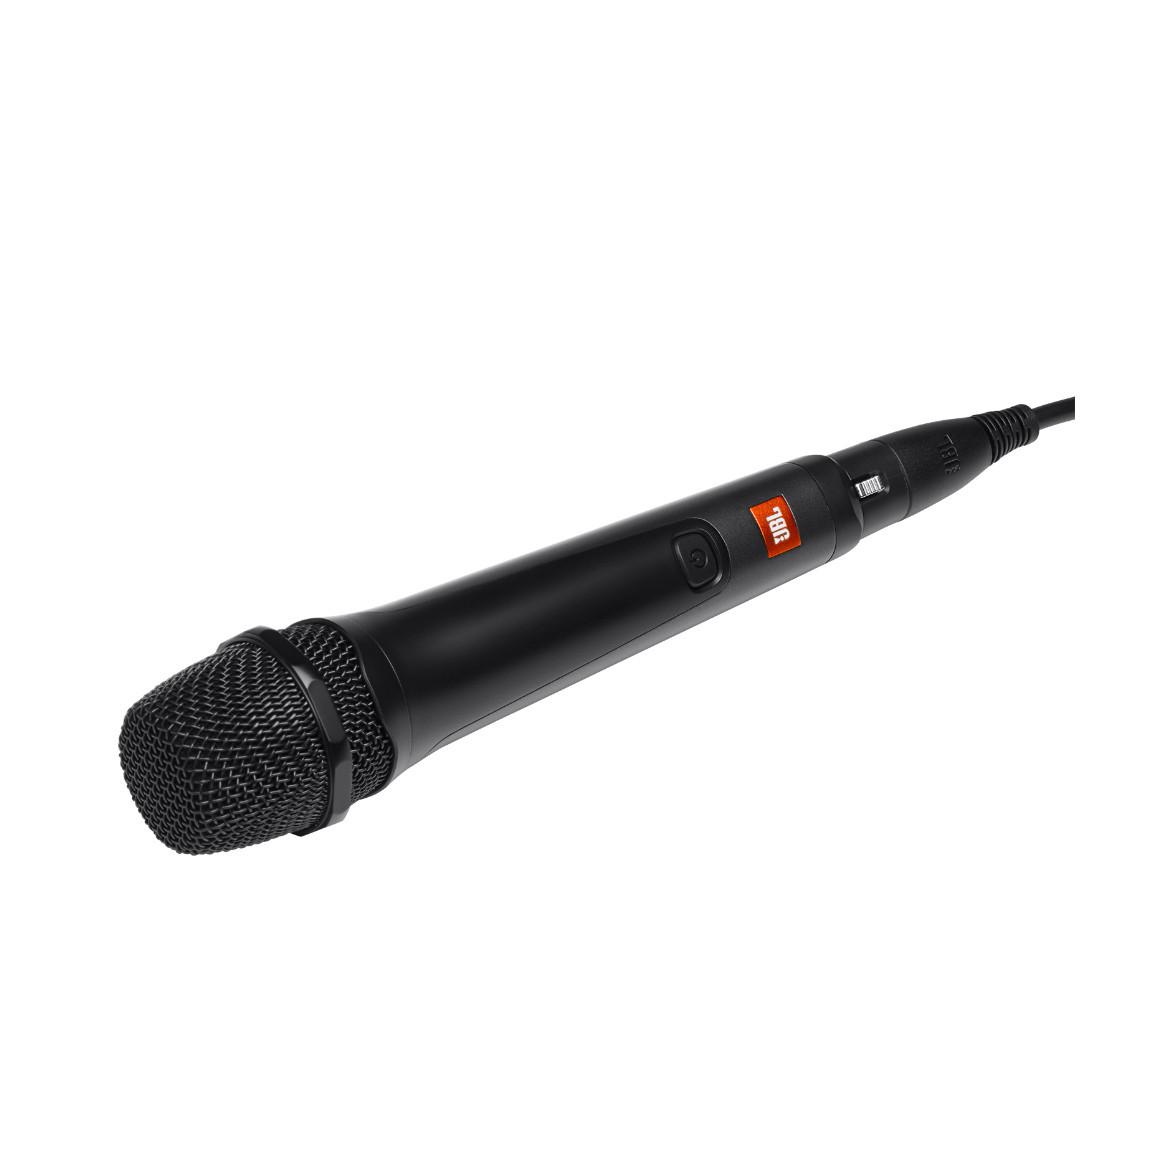 JBL Mikrofon für Partybox, 4,5m Kabel_schraeg